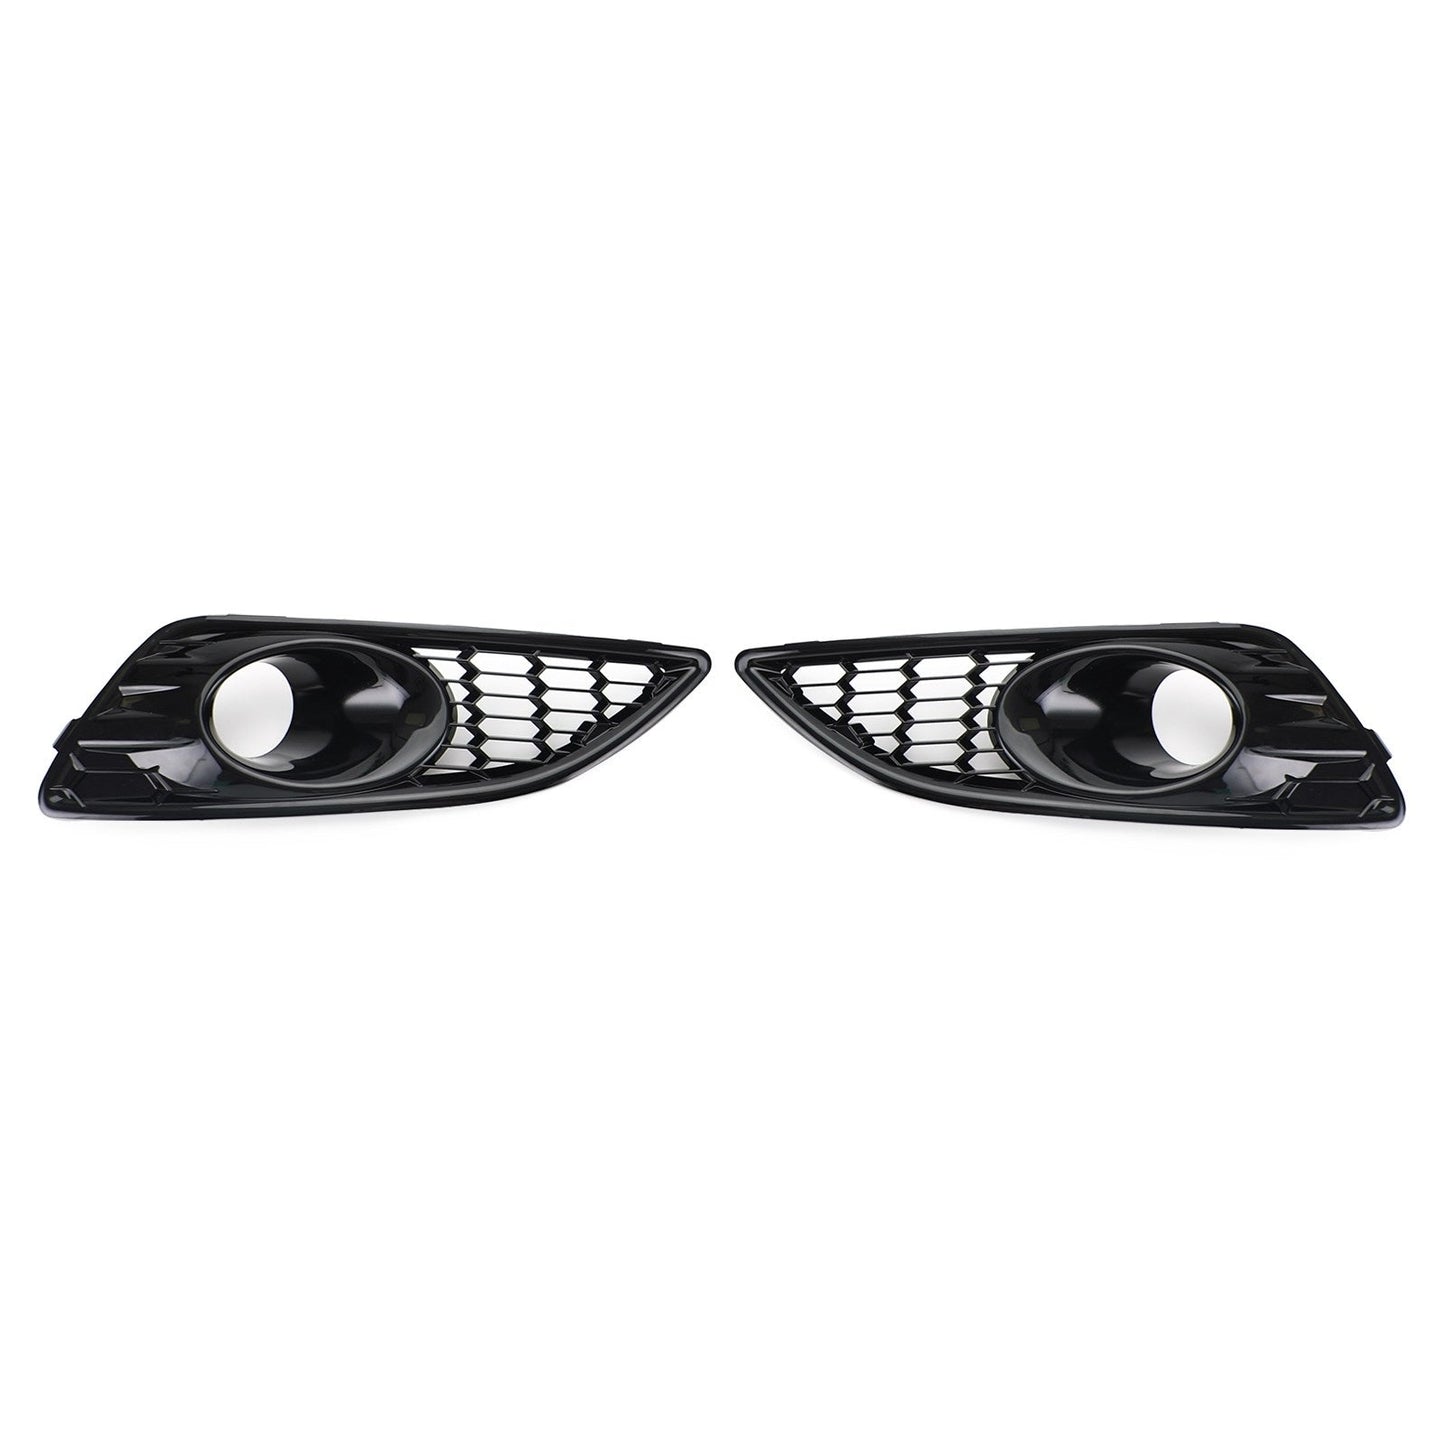 Paar Kühlergrill Gloss Black Front Nebel Lichtlampe Abdeckung Ford Fiesta 2013-2017 Generisches Generikum